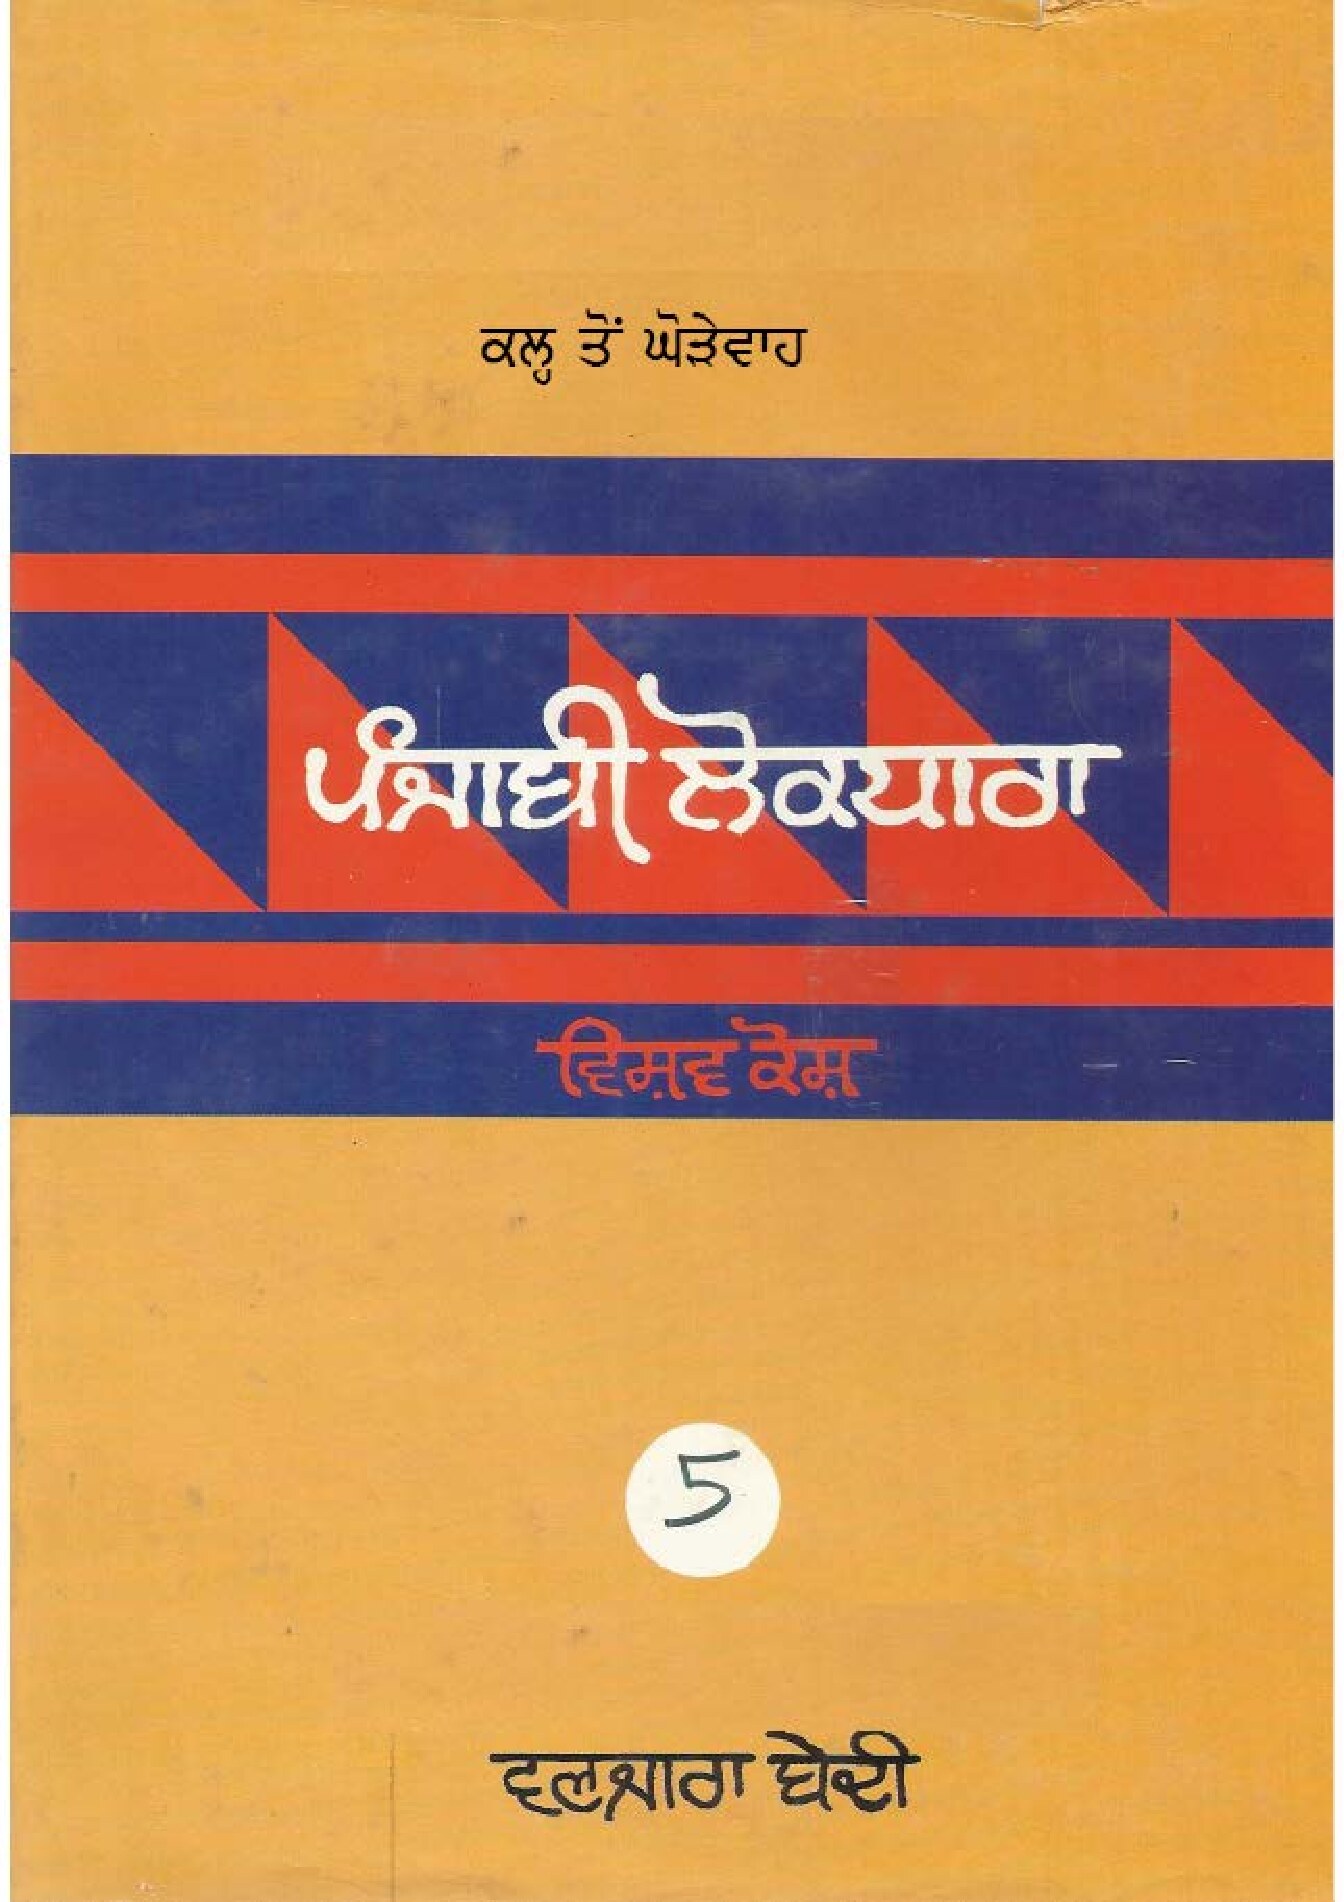 ਪੰਜਾਬੀ ਲੋਕ ਧਾਰਾ - ਵਿਸ਼ਵ ਕੋਸ਼(5) - Punjabi Lok Dhara - Vishav Kosh(5)